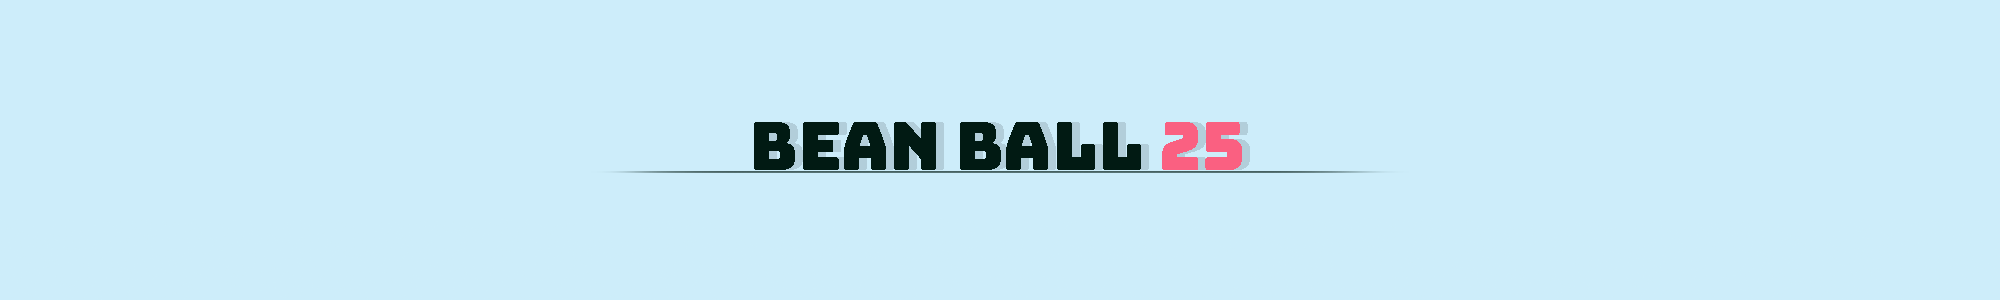 Bean Ball 25